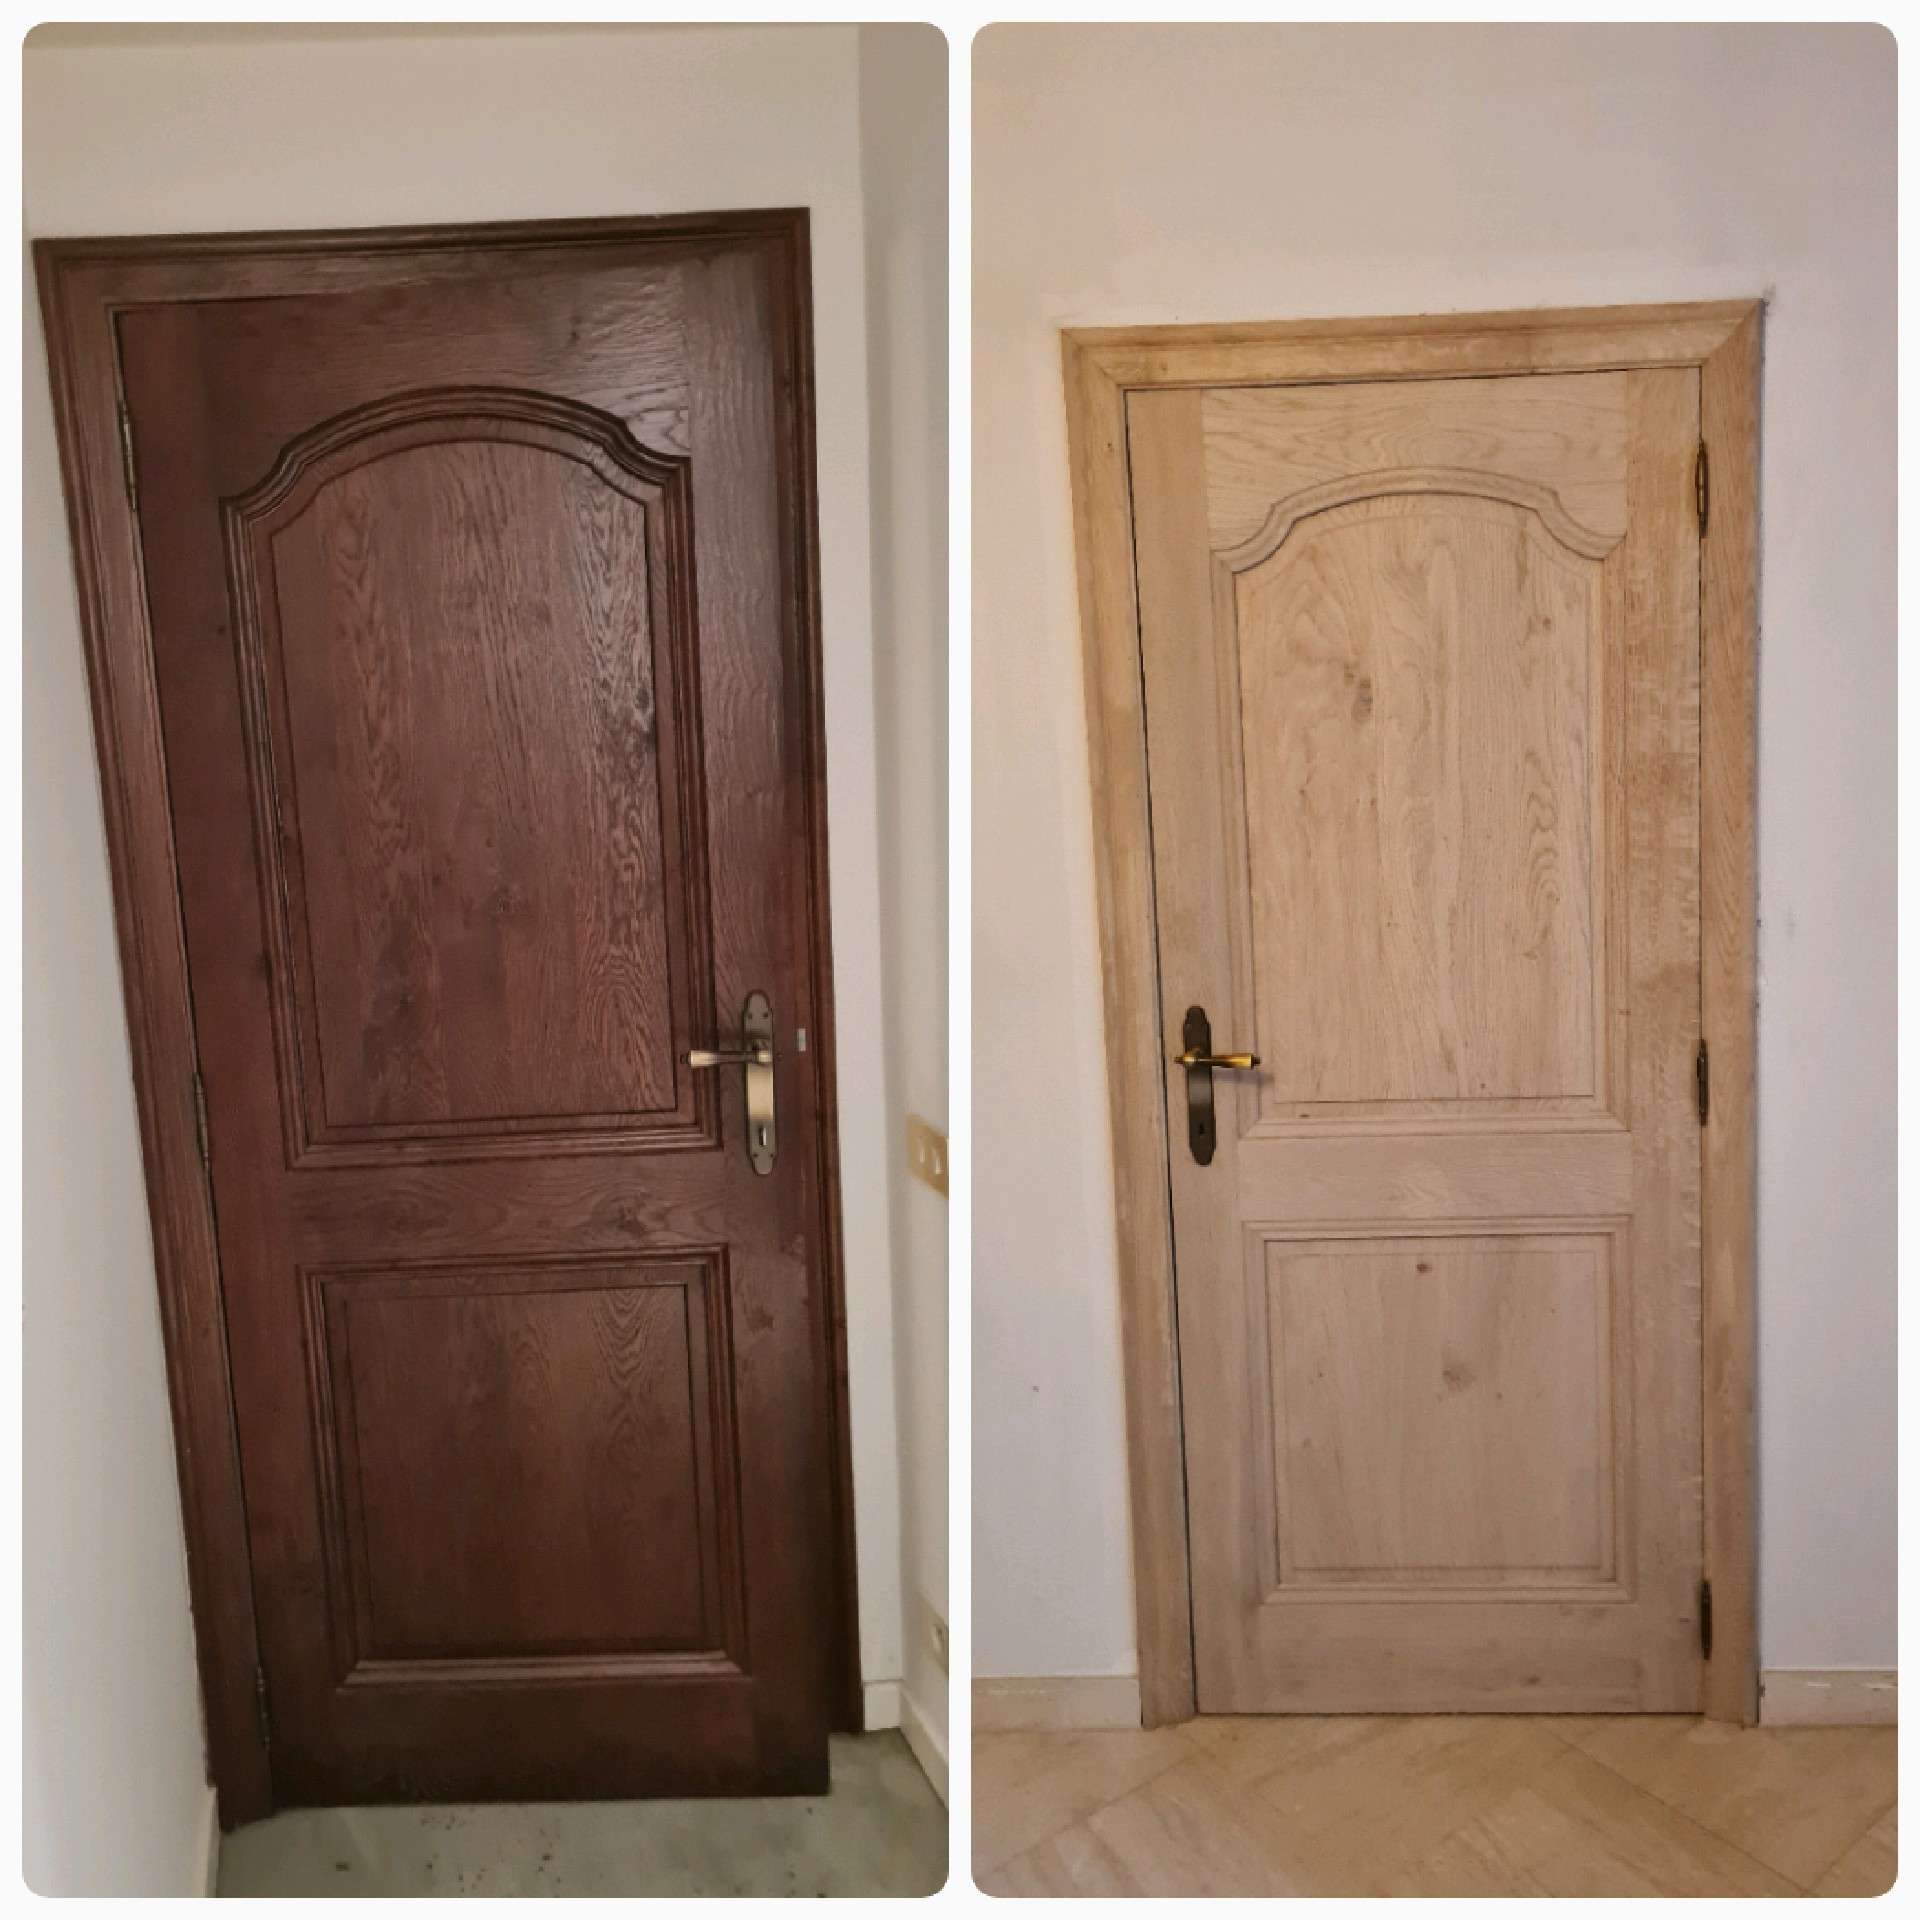 Donker bruine deur naar houtkleur